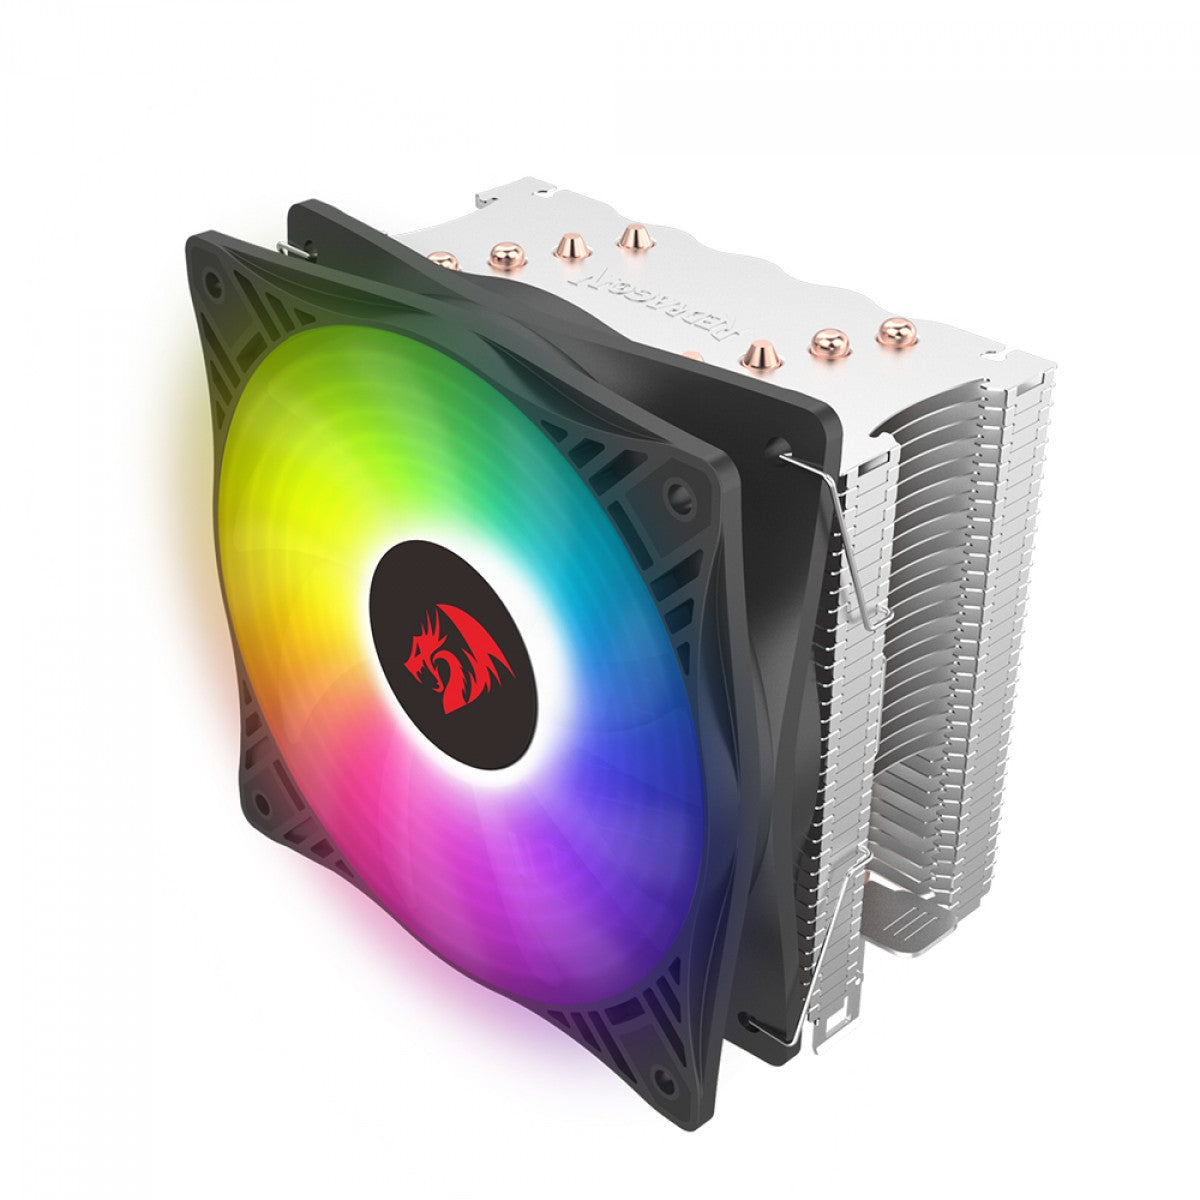 Cooler para Processador Redragon Agent RGB, 120mm, Intel-AMD, CC-2011